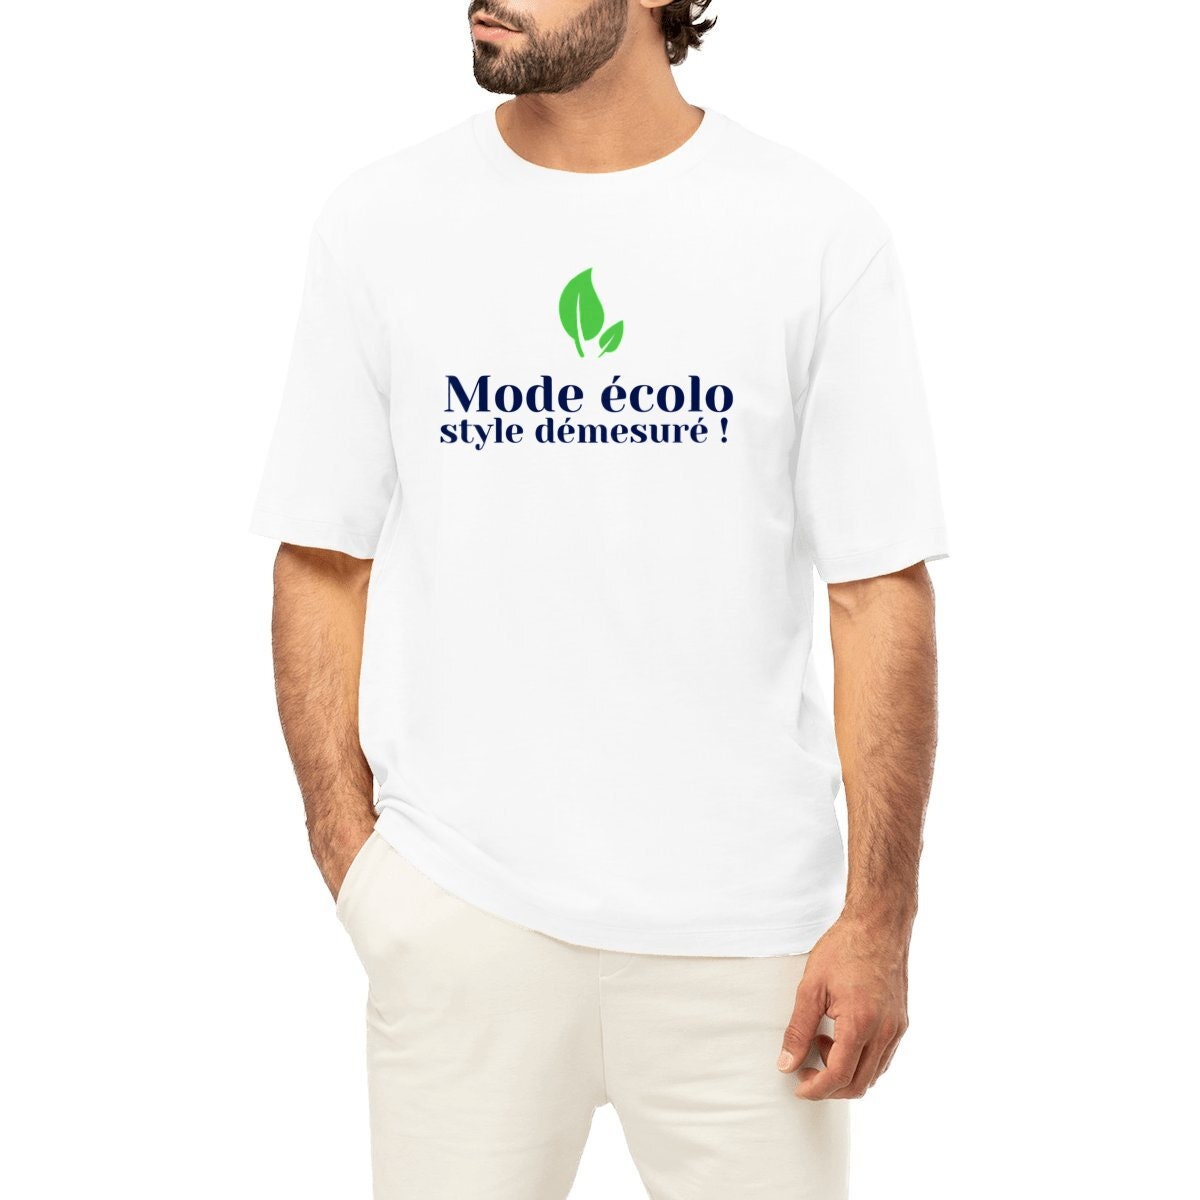 Camiseta algodón de manga corta con impresión para hombre blanco Bolf 14709A